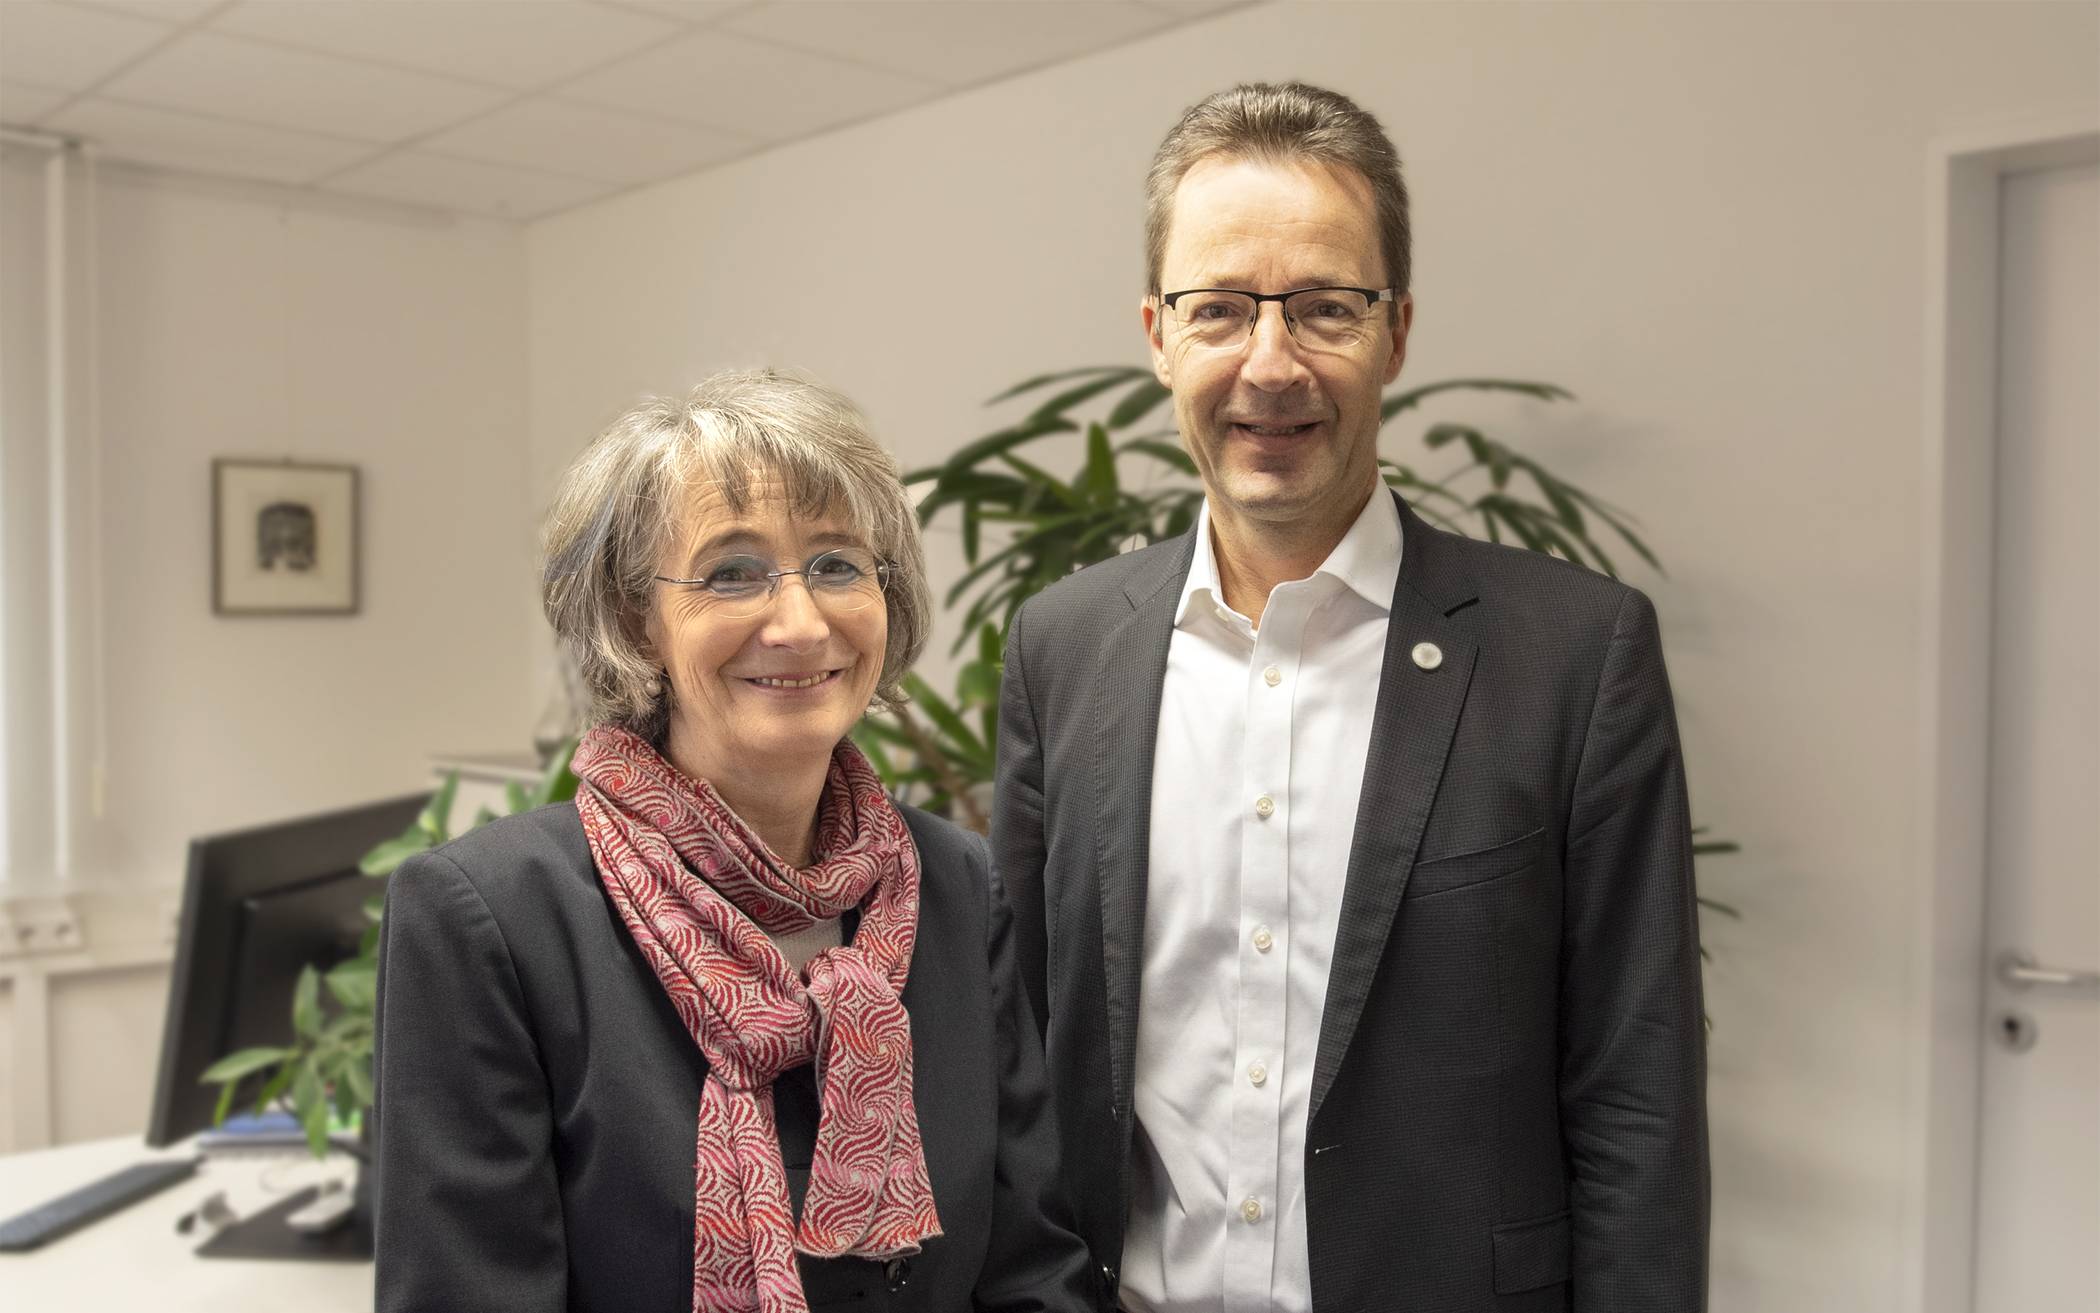  Setzen sich gemeinsam für Gleichstellung ein: Uni-Gleichstellungsbeauftragte Dr. Christel Hornstein und Rektor Prof. Dr. Lambert T. Koch. 